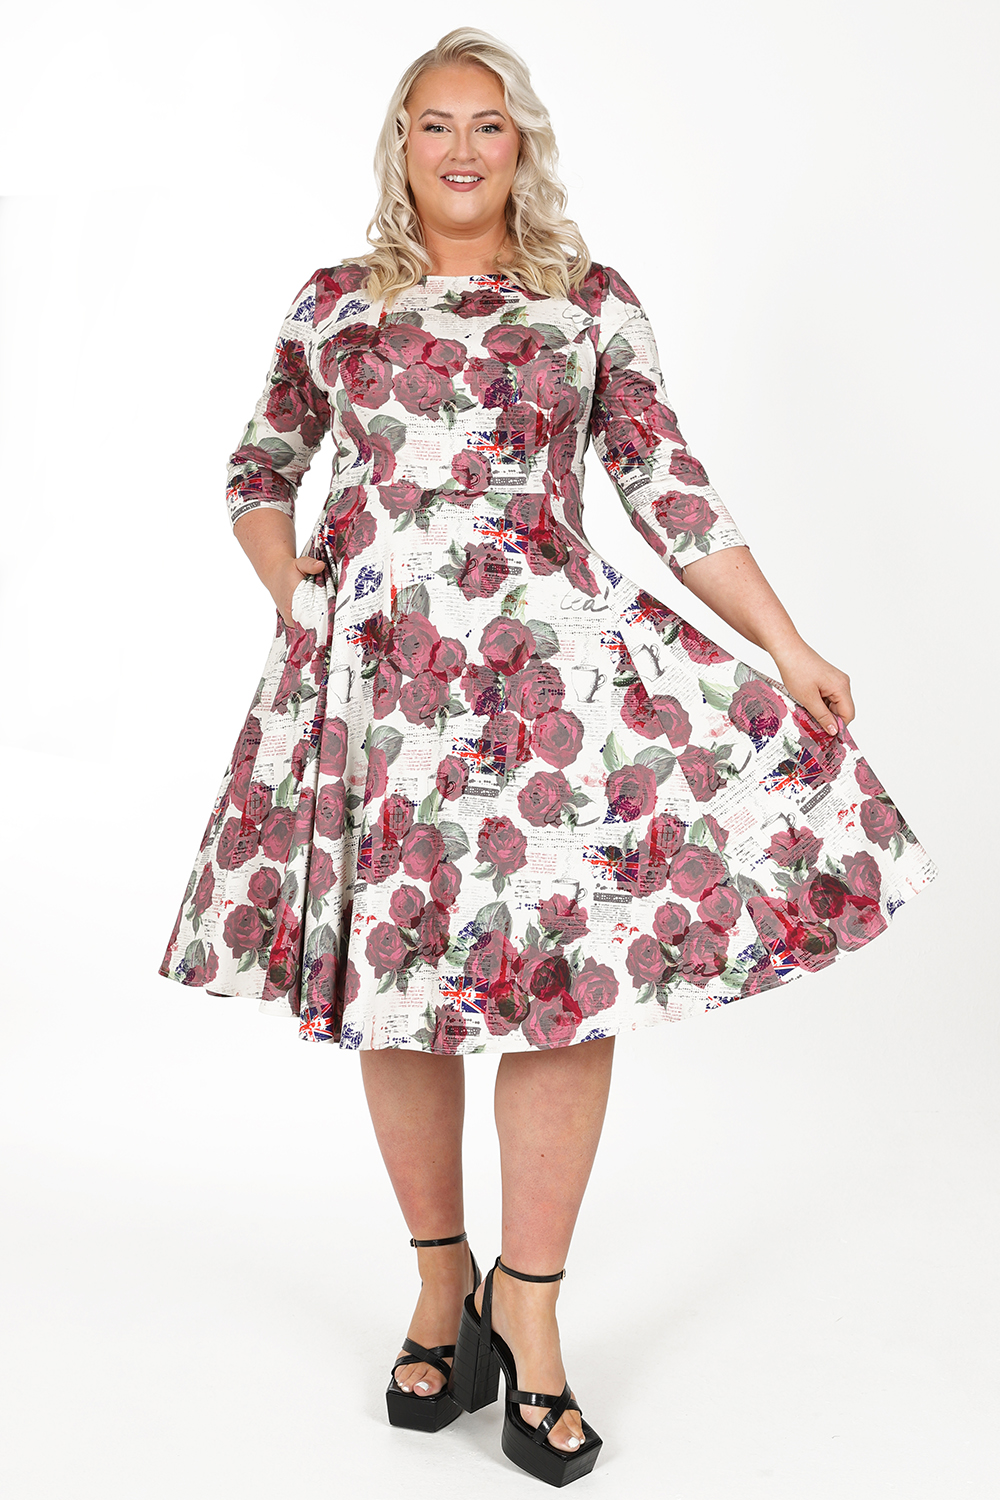 Poppy Flower Dress, Plus Size Dress, Printed Dress, Summer Dress, Plus Size  Clothing, Midi Dress, Floral Dress, Evening Dress, 1950's Dress -   Canada